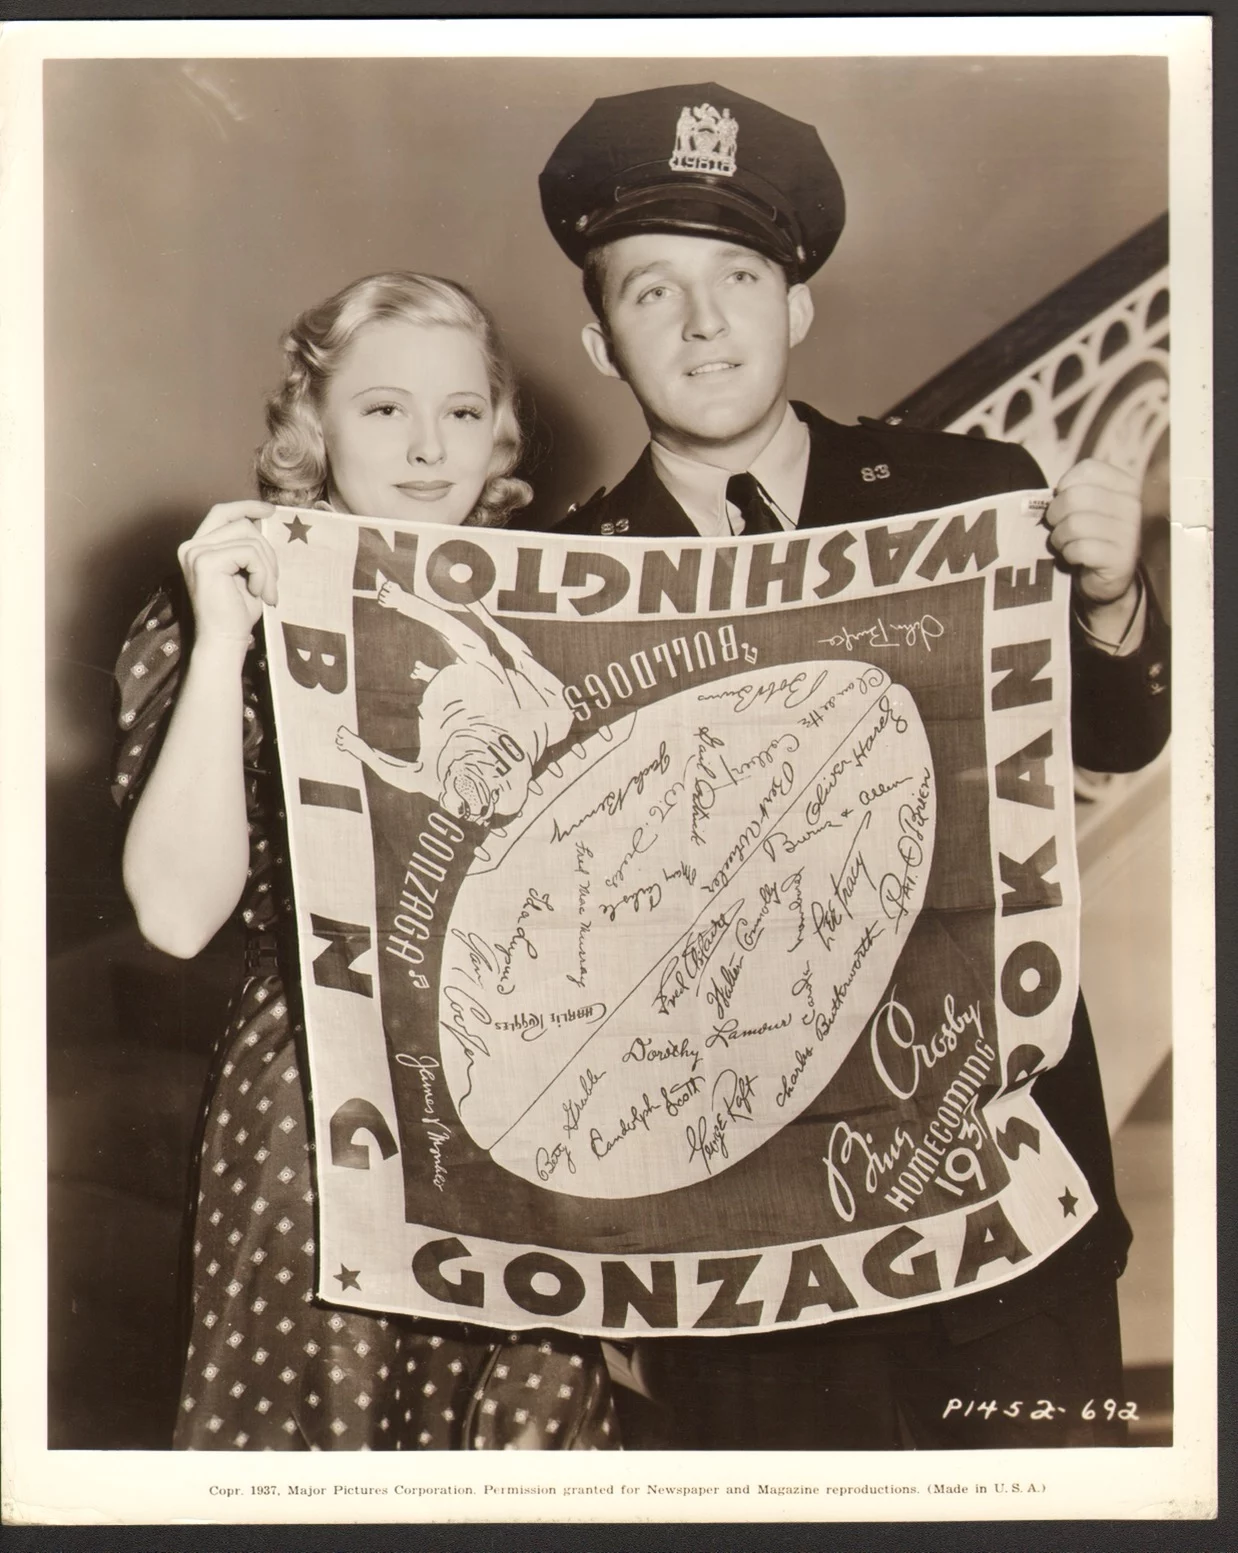 Bing Crosby Gonzaga Scarf